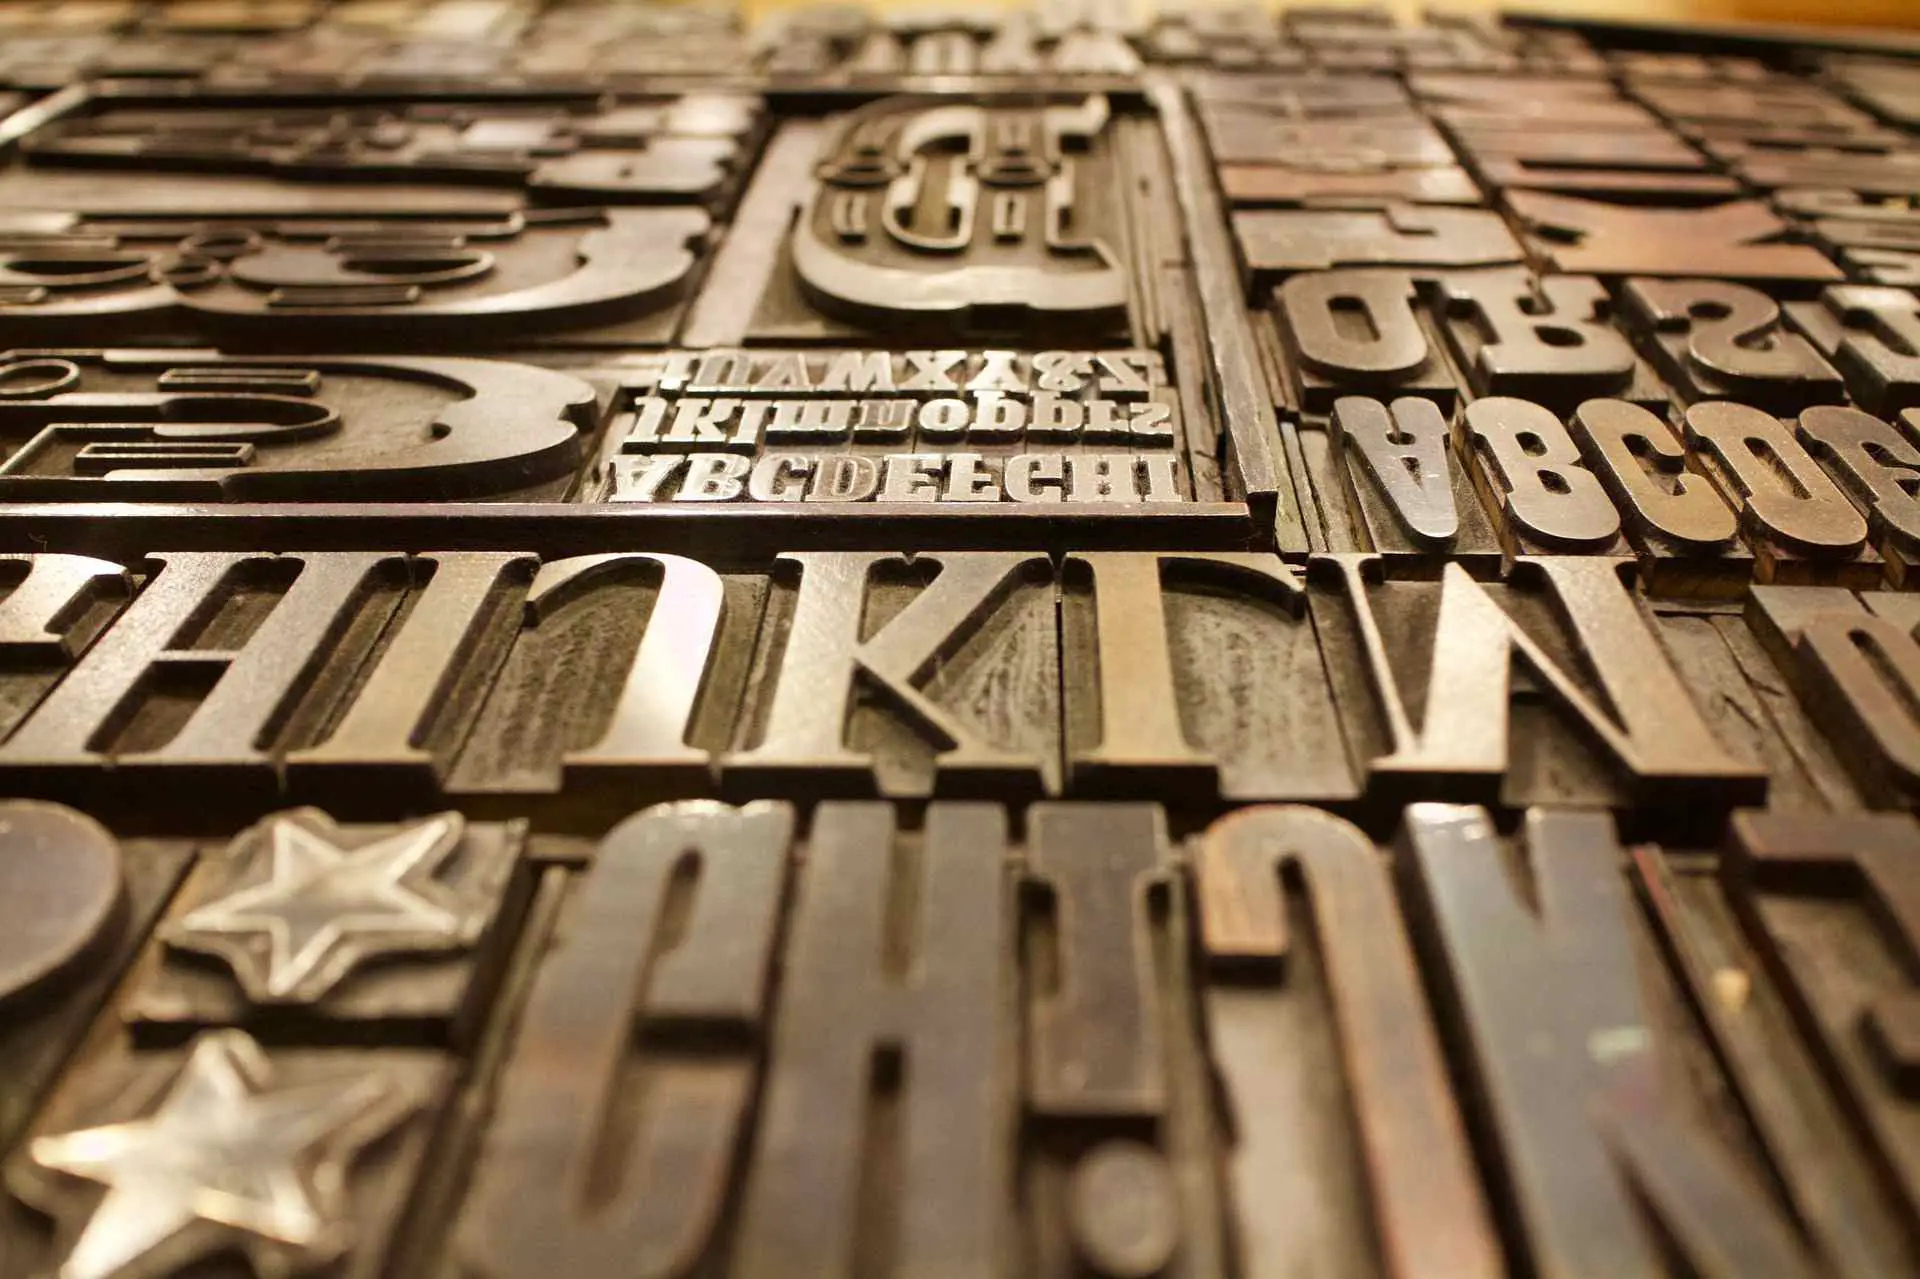 Chapas de impressão de fontes de vários tamanhos e letras.